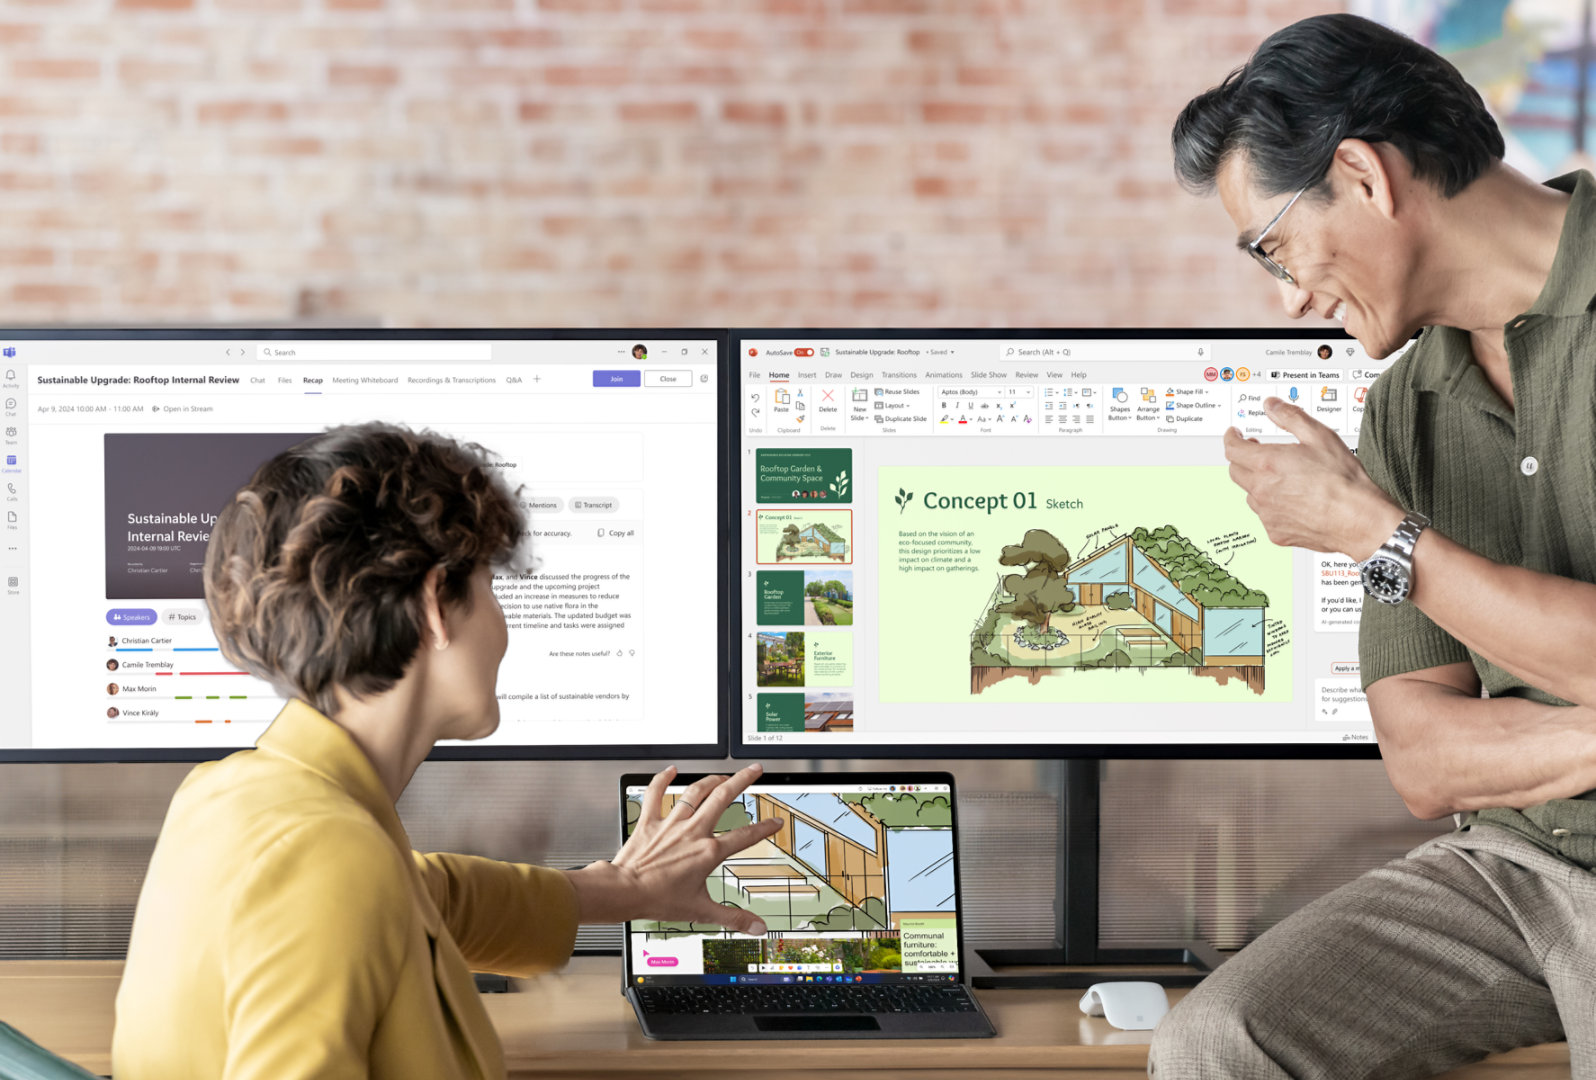 رجل وامرأة يجلسان على مكتب وينظران إلى جهاز Surface Pro 10 المتصل بشاشتين تعرضان تطبيقات Microsoft 365